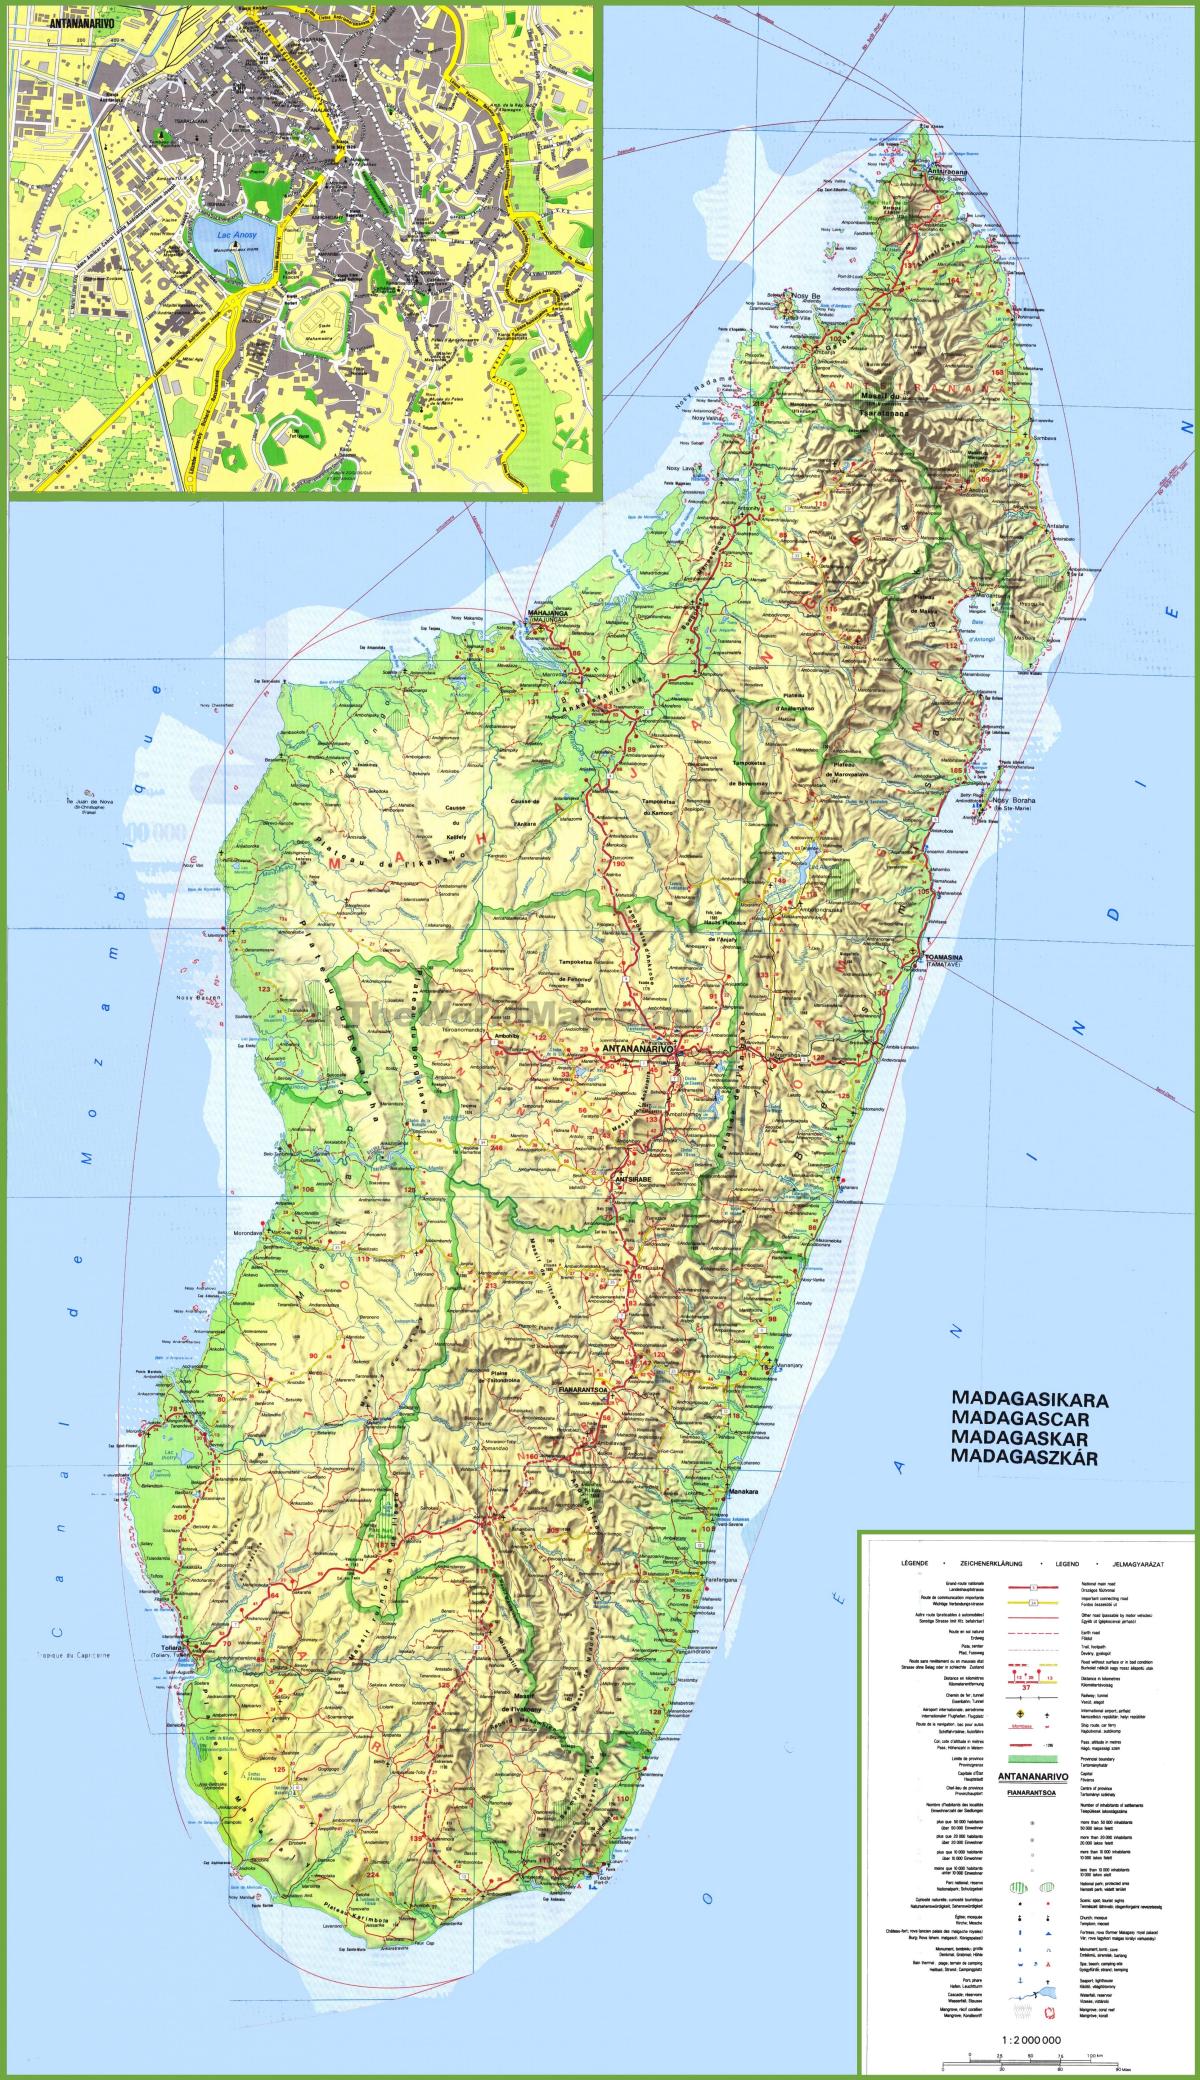 мапата покажувајќи Мадагаскар